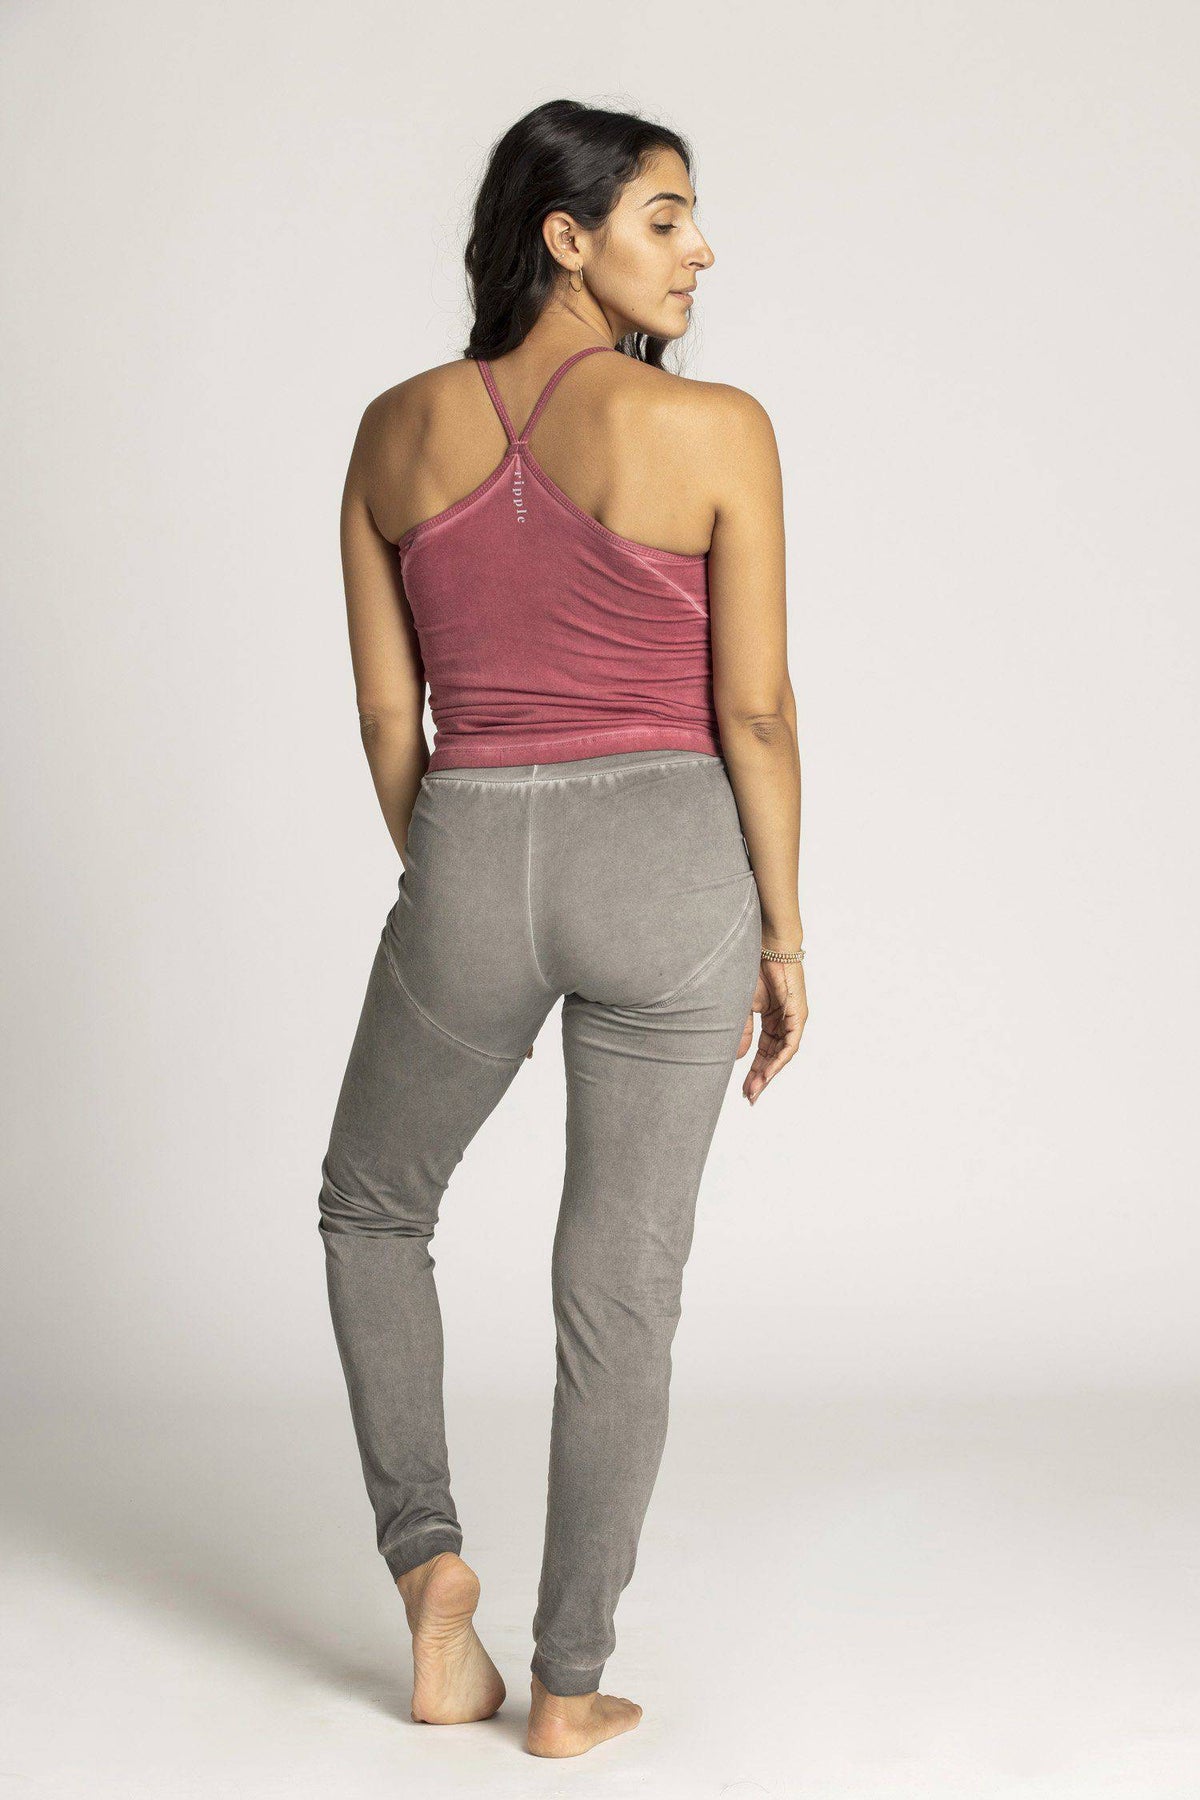 Stone Wash Unisex Slouchy Yoga Pants - mens clothing - Ripple Yoga Wear